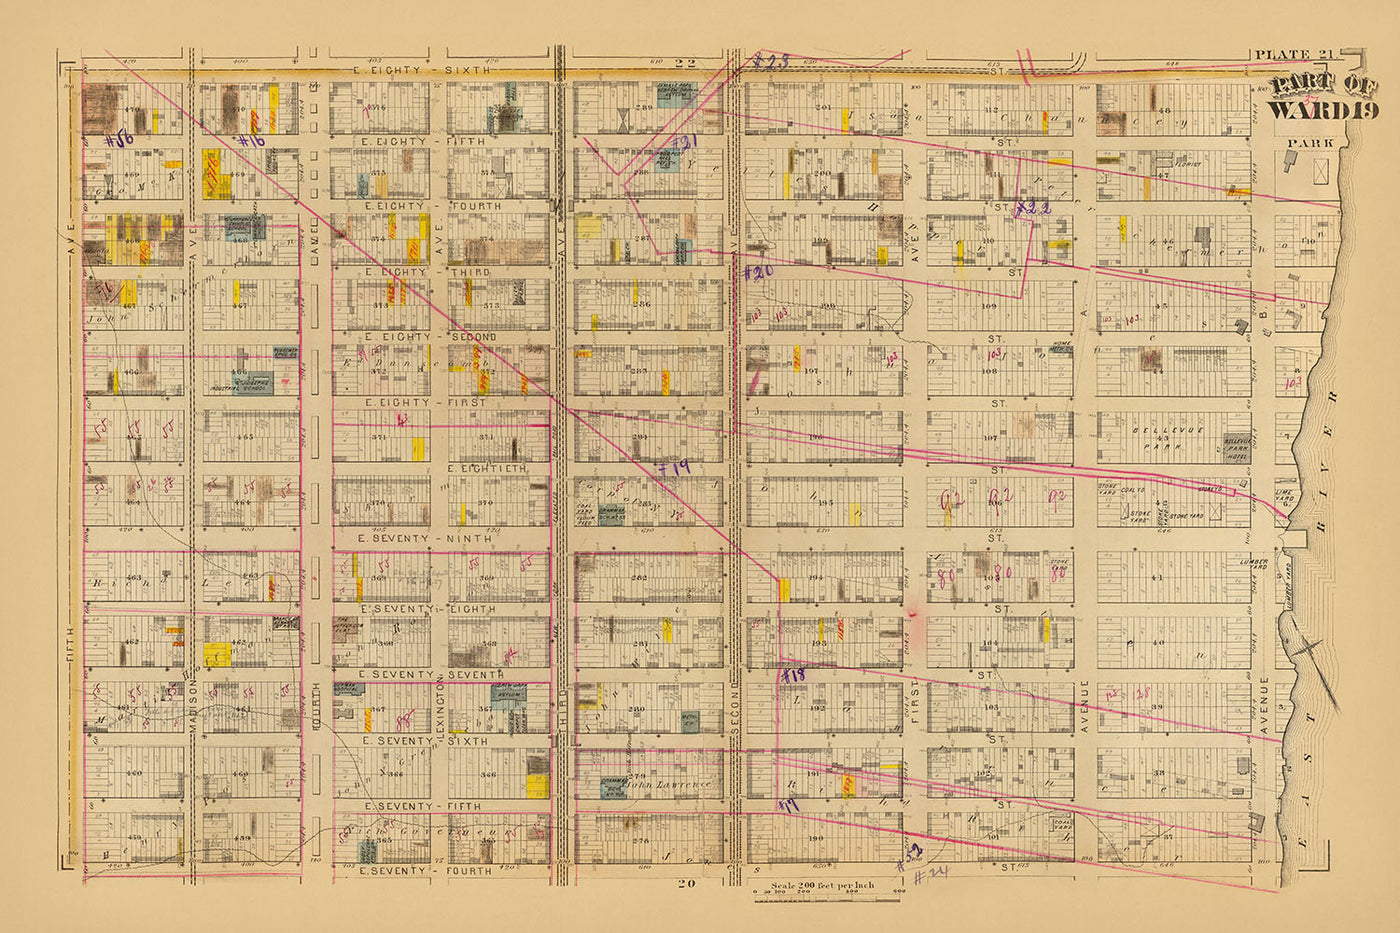 Mapa antiguo del Upper East Side, Nueva York, de Bromley, 1879: Distrito 19, calles East 74th a East 86th